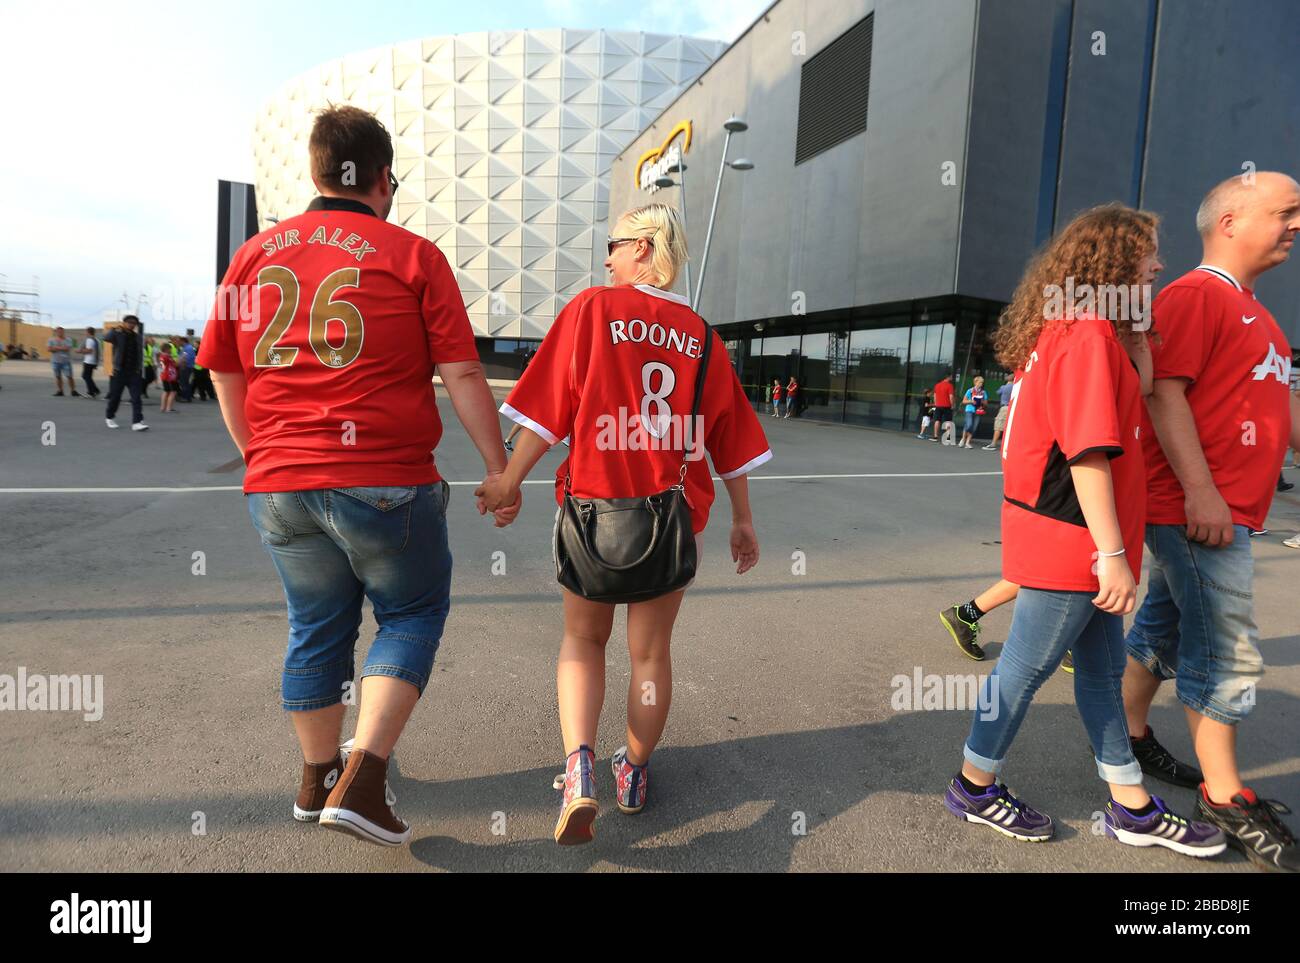 Les fans de Manchester United avec les noms « ir Alex » et « Rooney » au dos de leurs chemises marchent vers le stade Friends Arena Banque D'Images